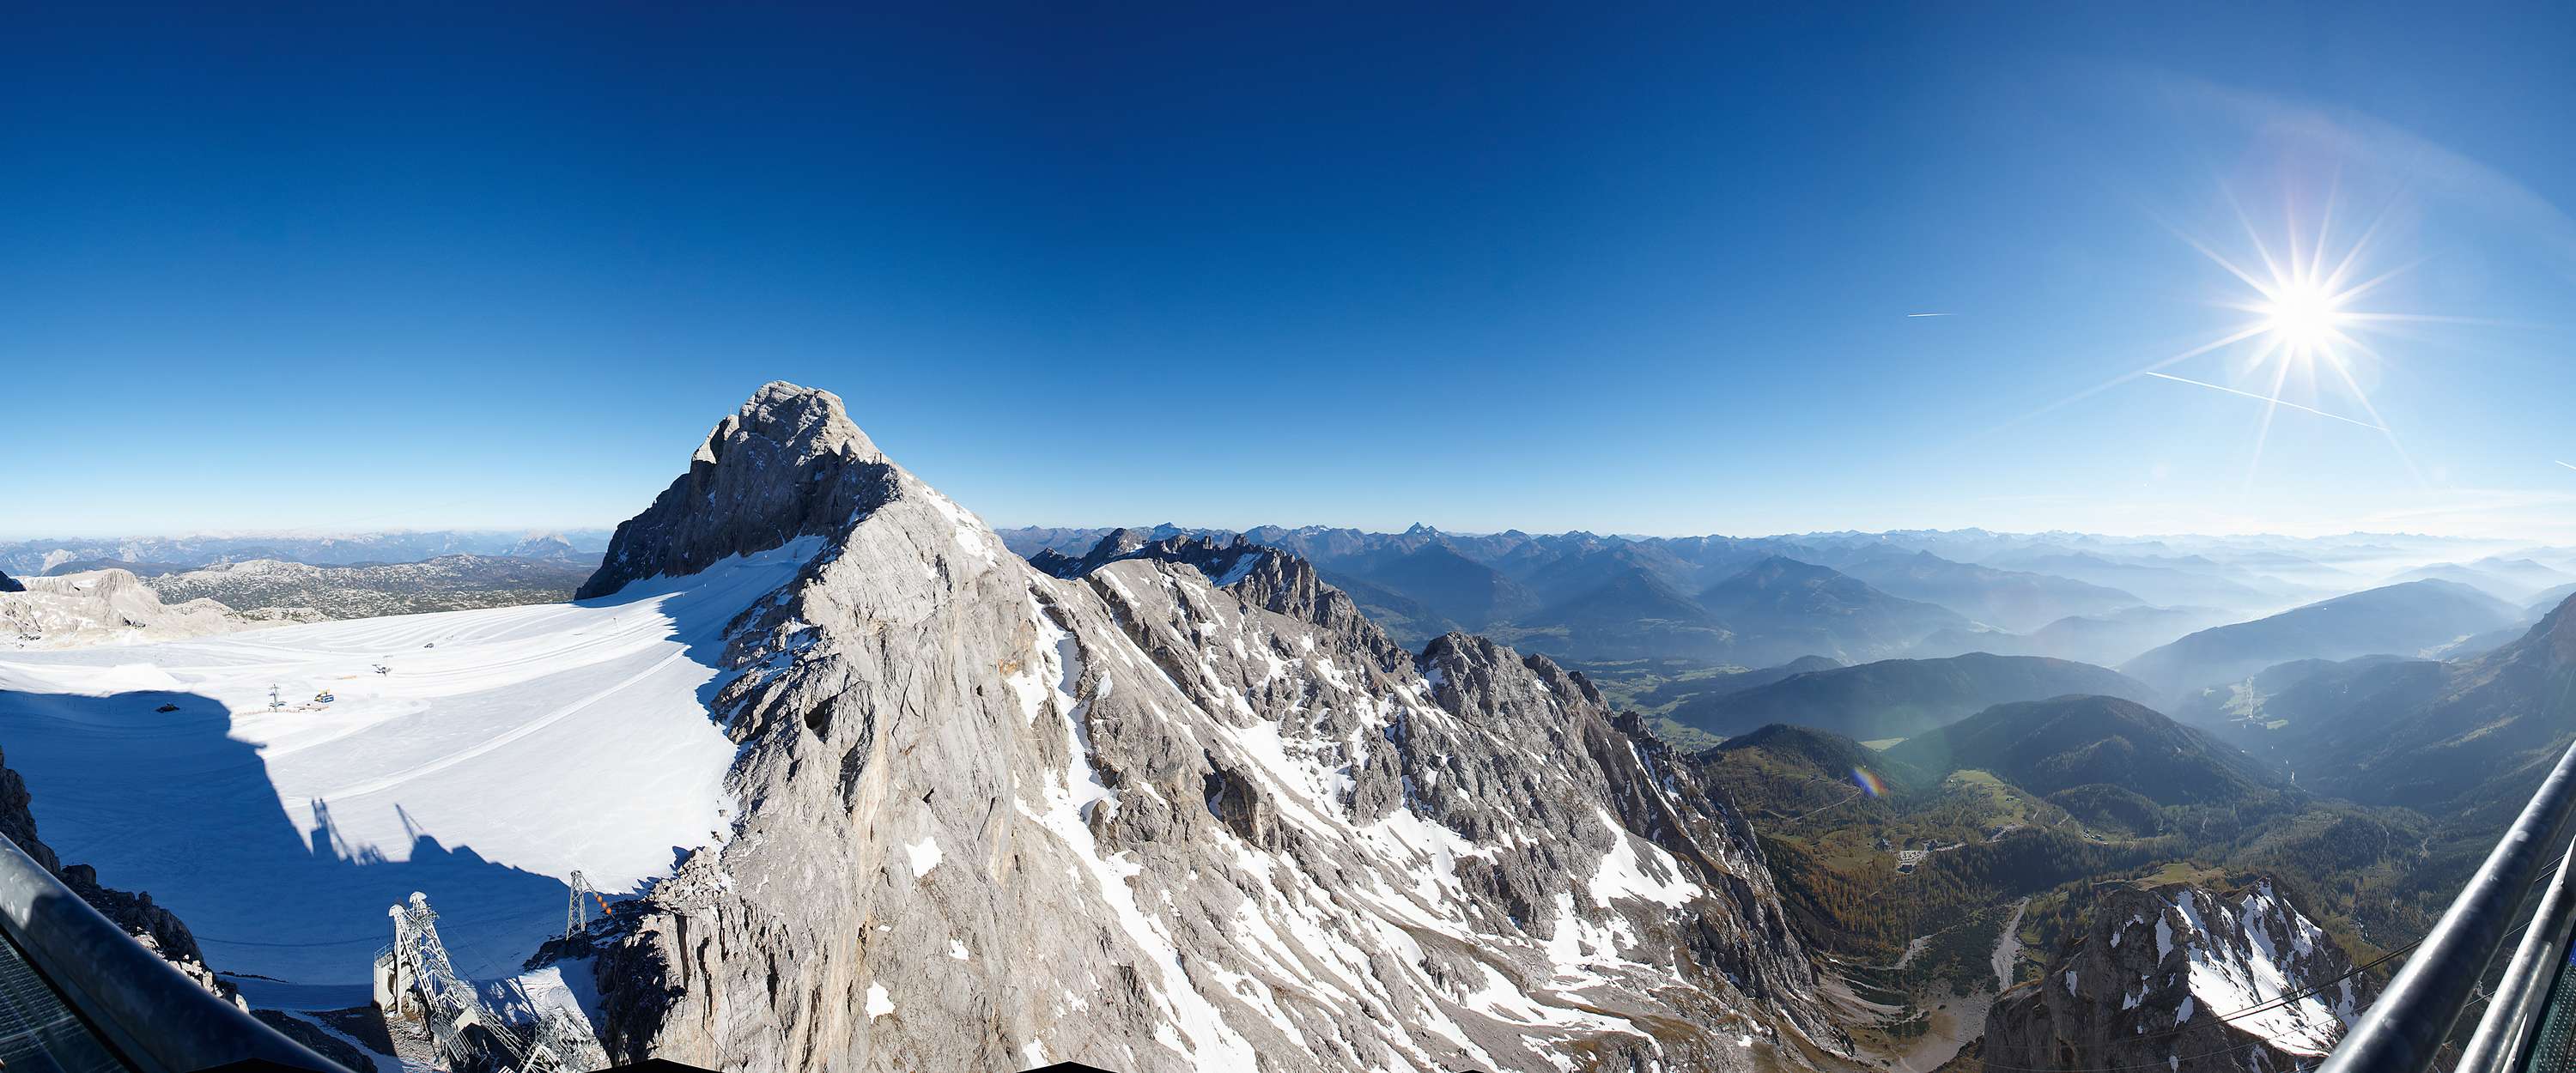             Picco della montagna - Sfondo fotografico con panorama montano e cielo
        